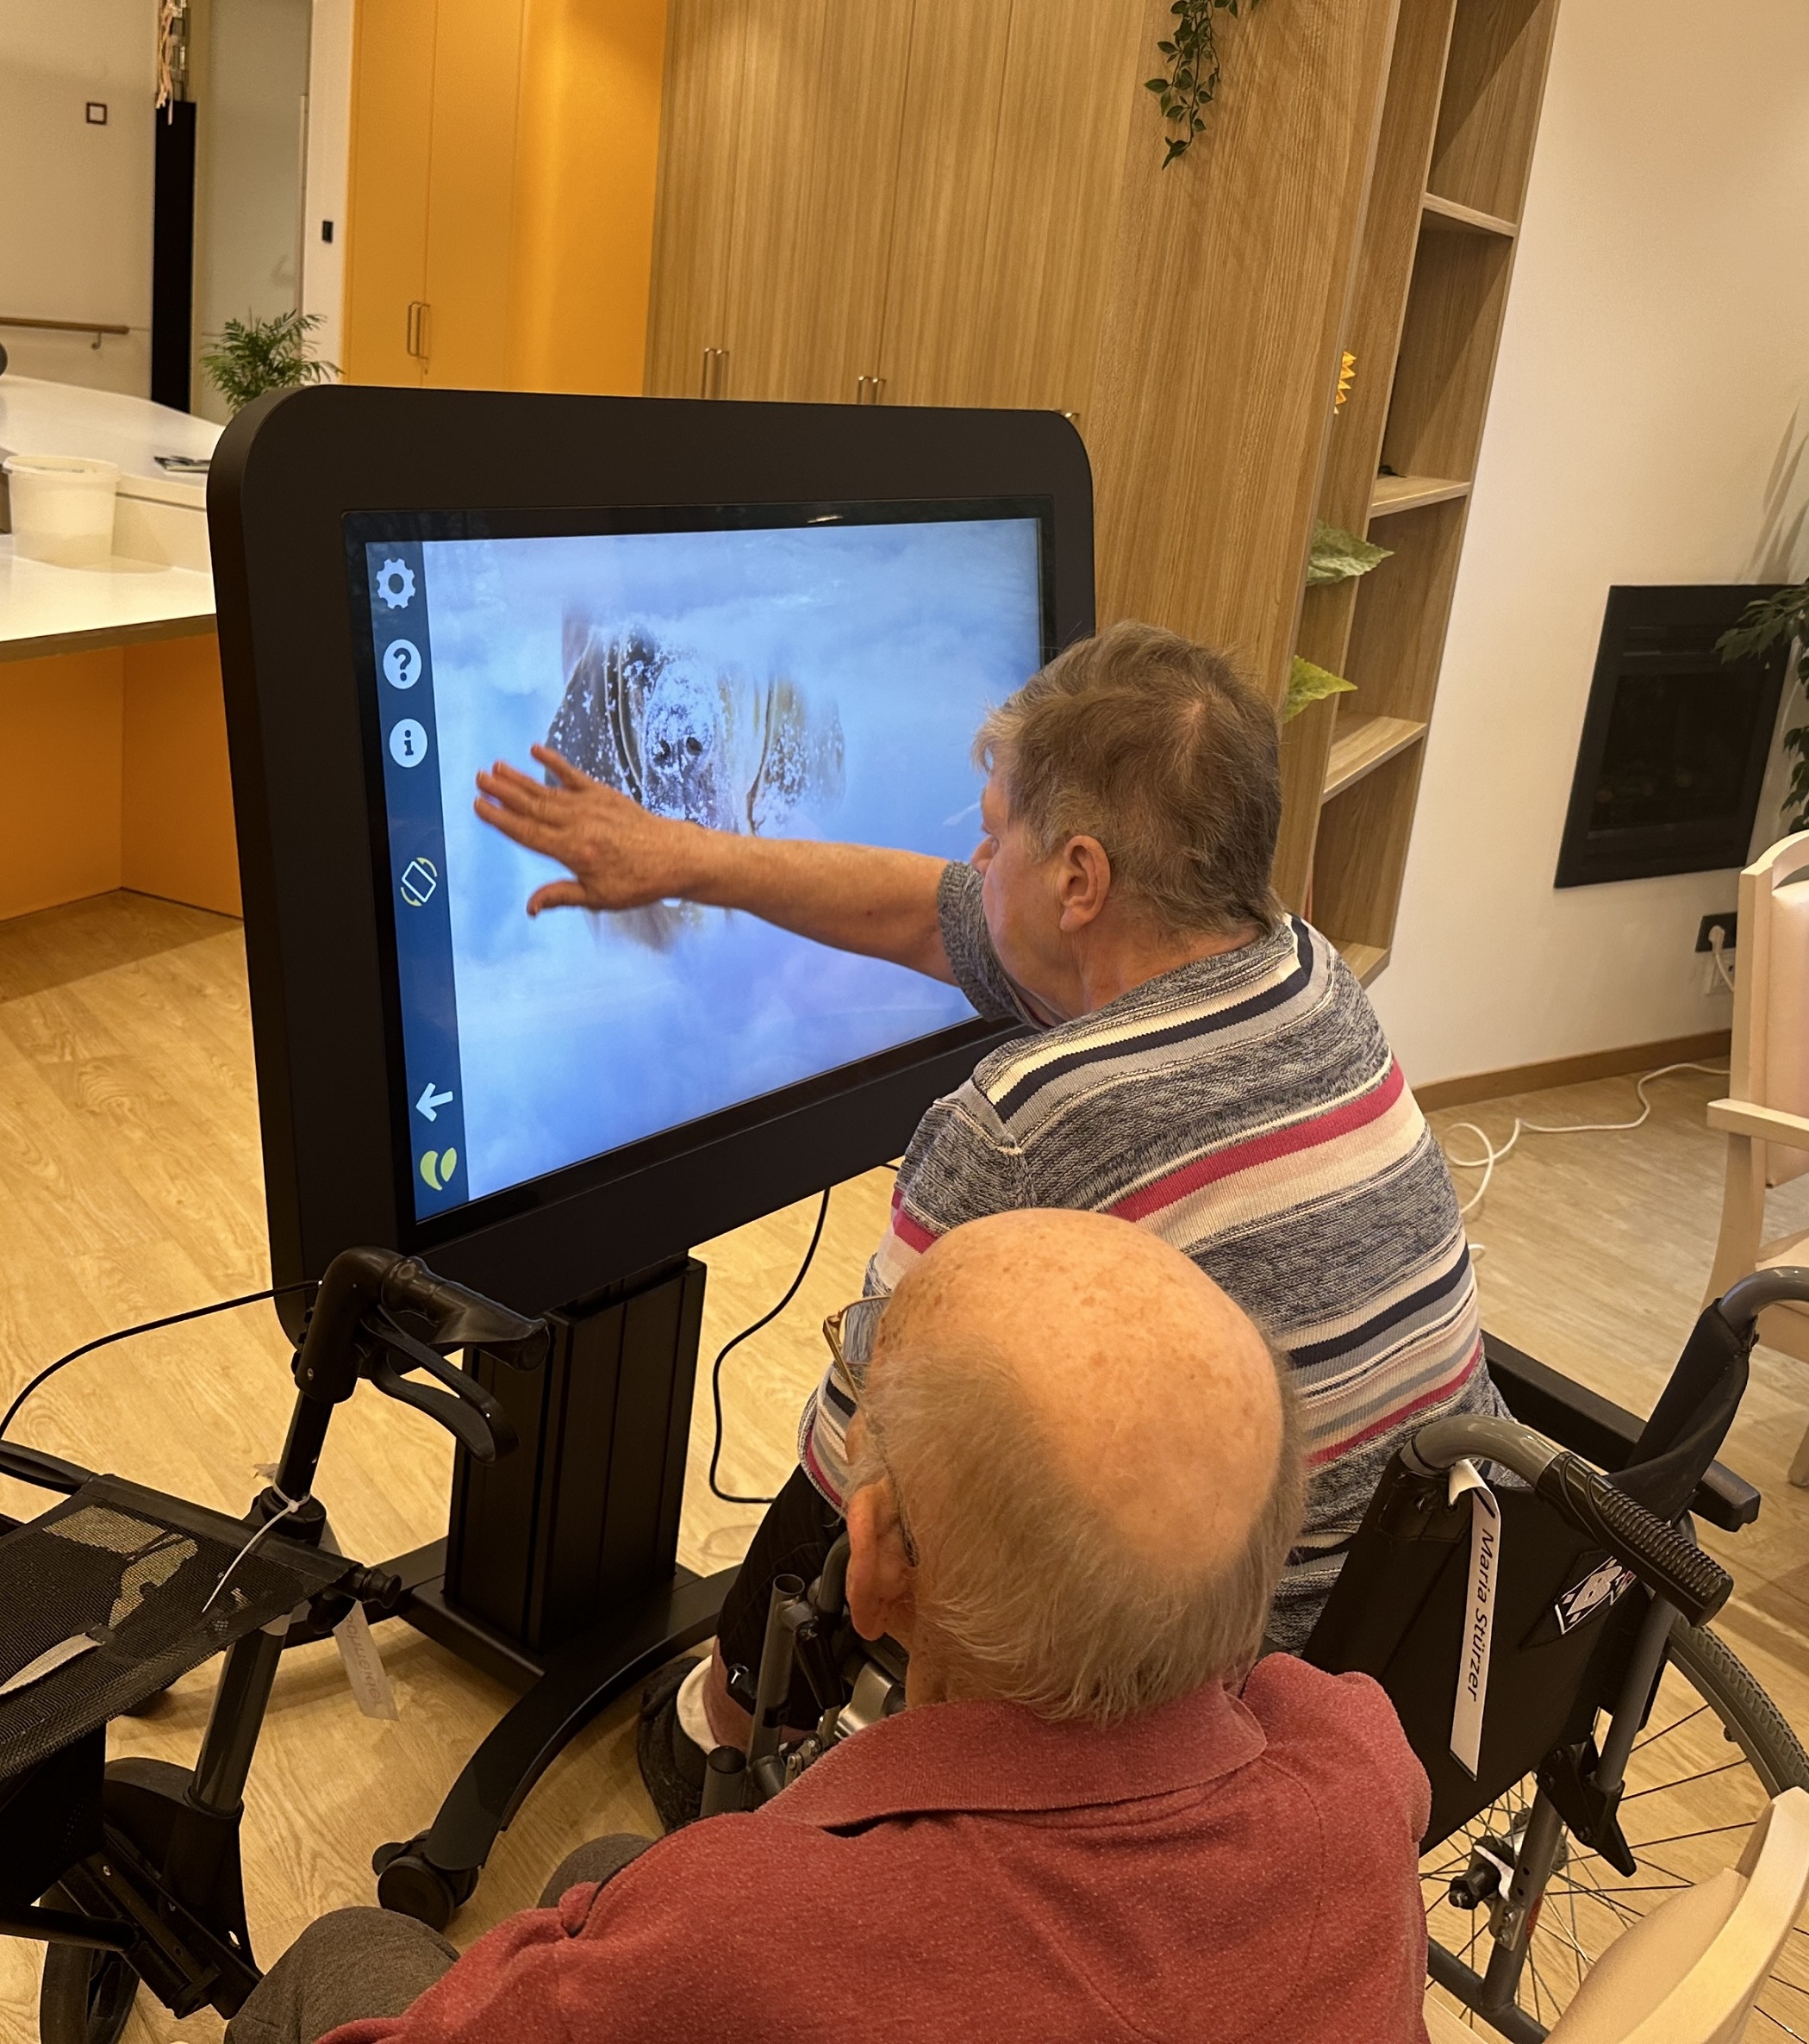 Zwei Senioren - eine Dame, ein Herr - sitzen vor einem großen Bildschirm. Die Dame berührt mit ihrer Hand den Bildschirm. 